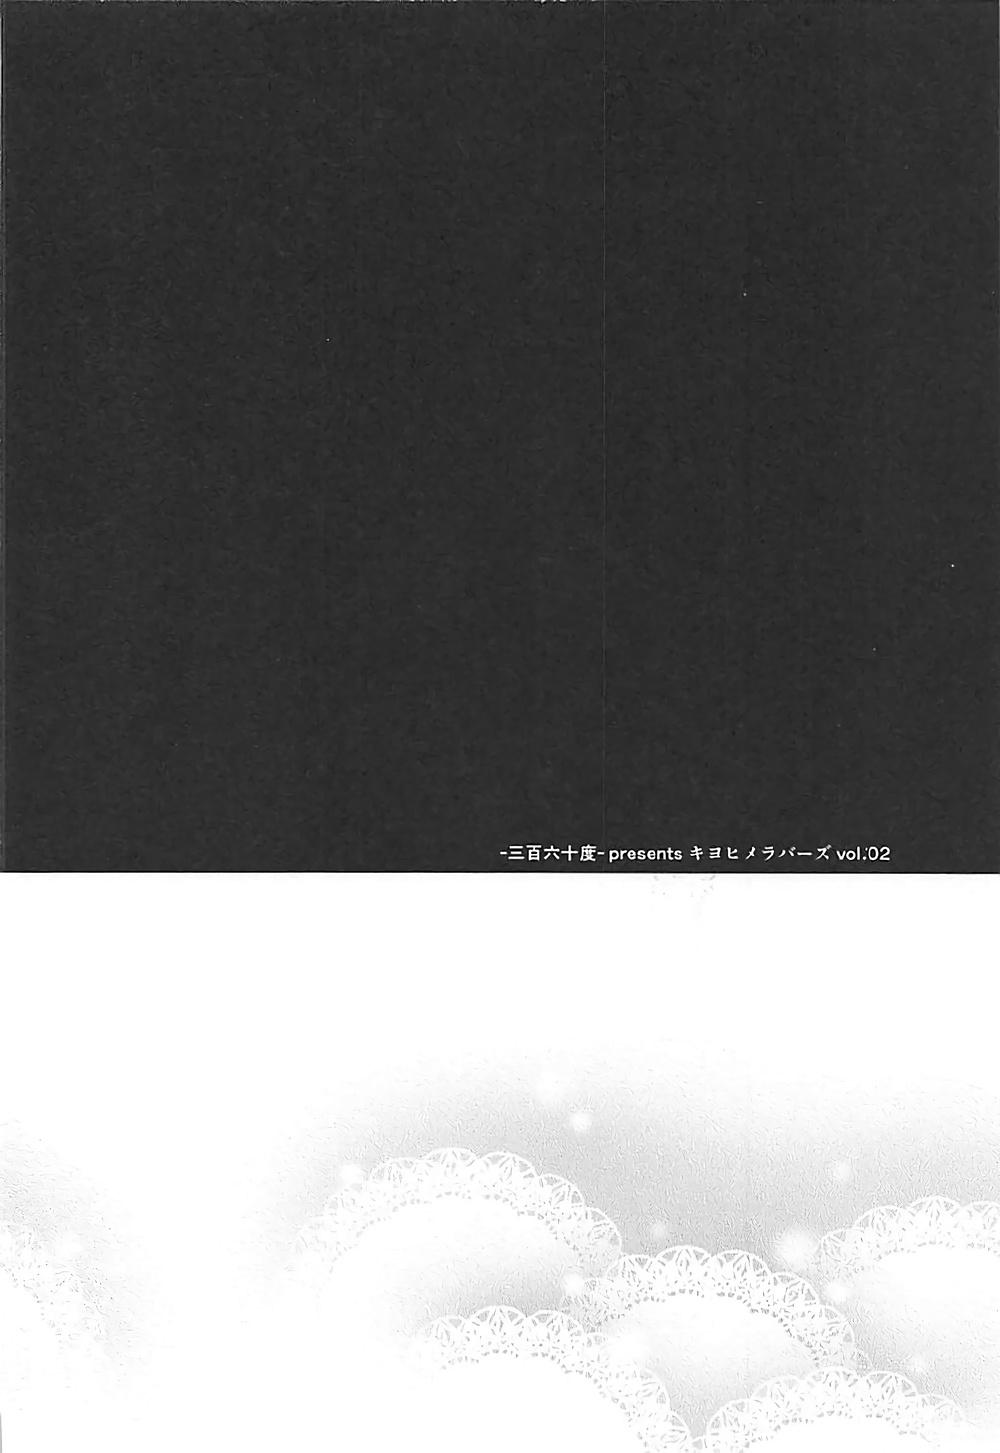 キヨヒメラバーズ vol.02(COMIC1☆12) [-三百六十度- (白鷺六羽)]  (Fate/Grand Order) [中国翻訳](25页)